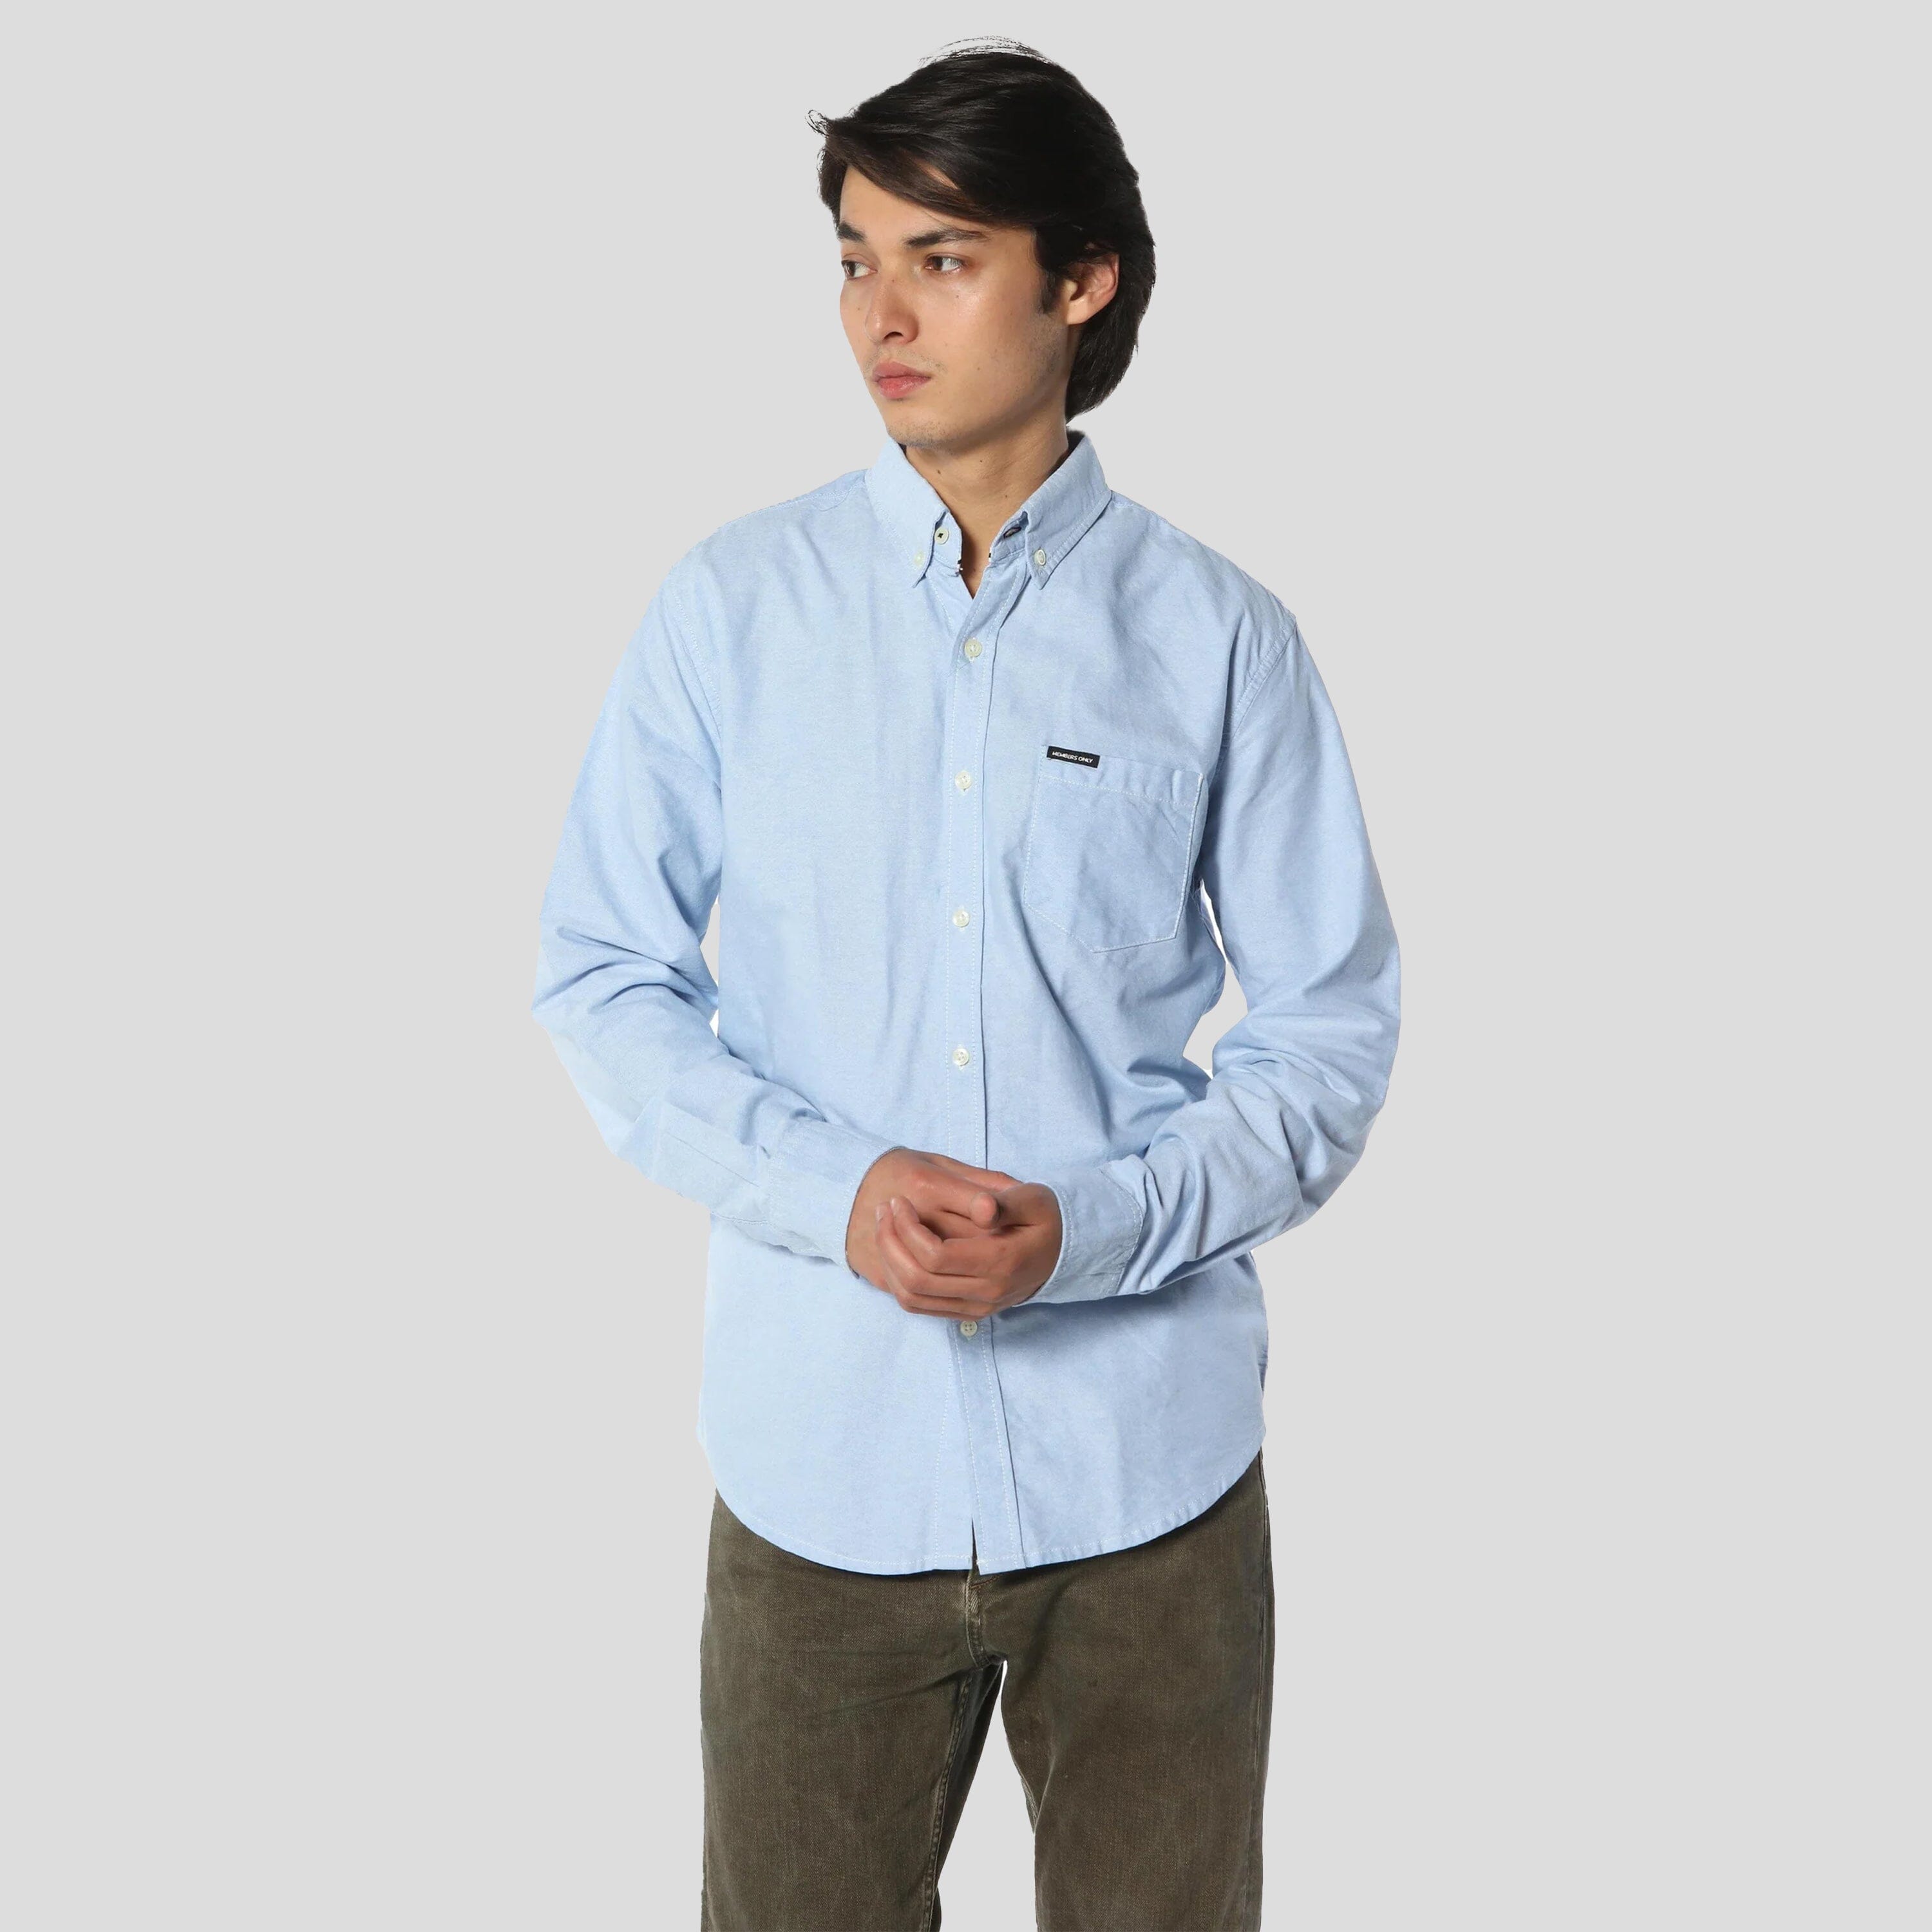 Oxford Button-Up Dress Shirt - FINAL SALE Mens Shirt Members Only 